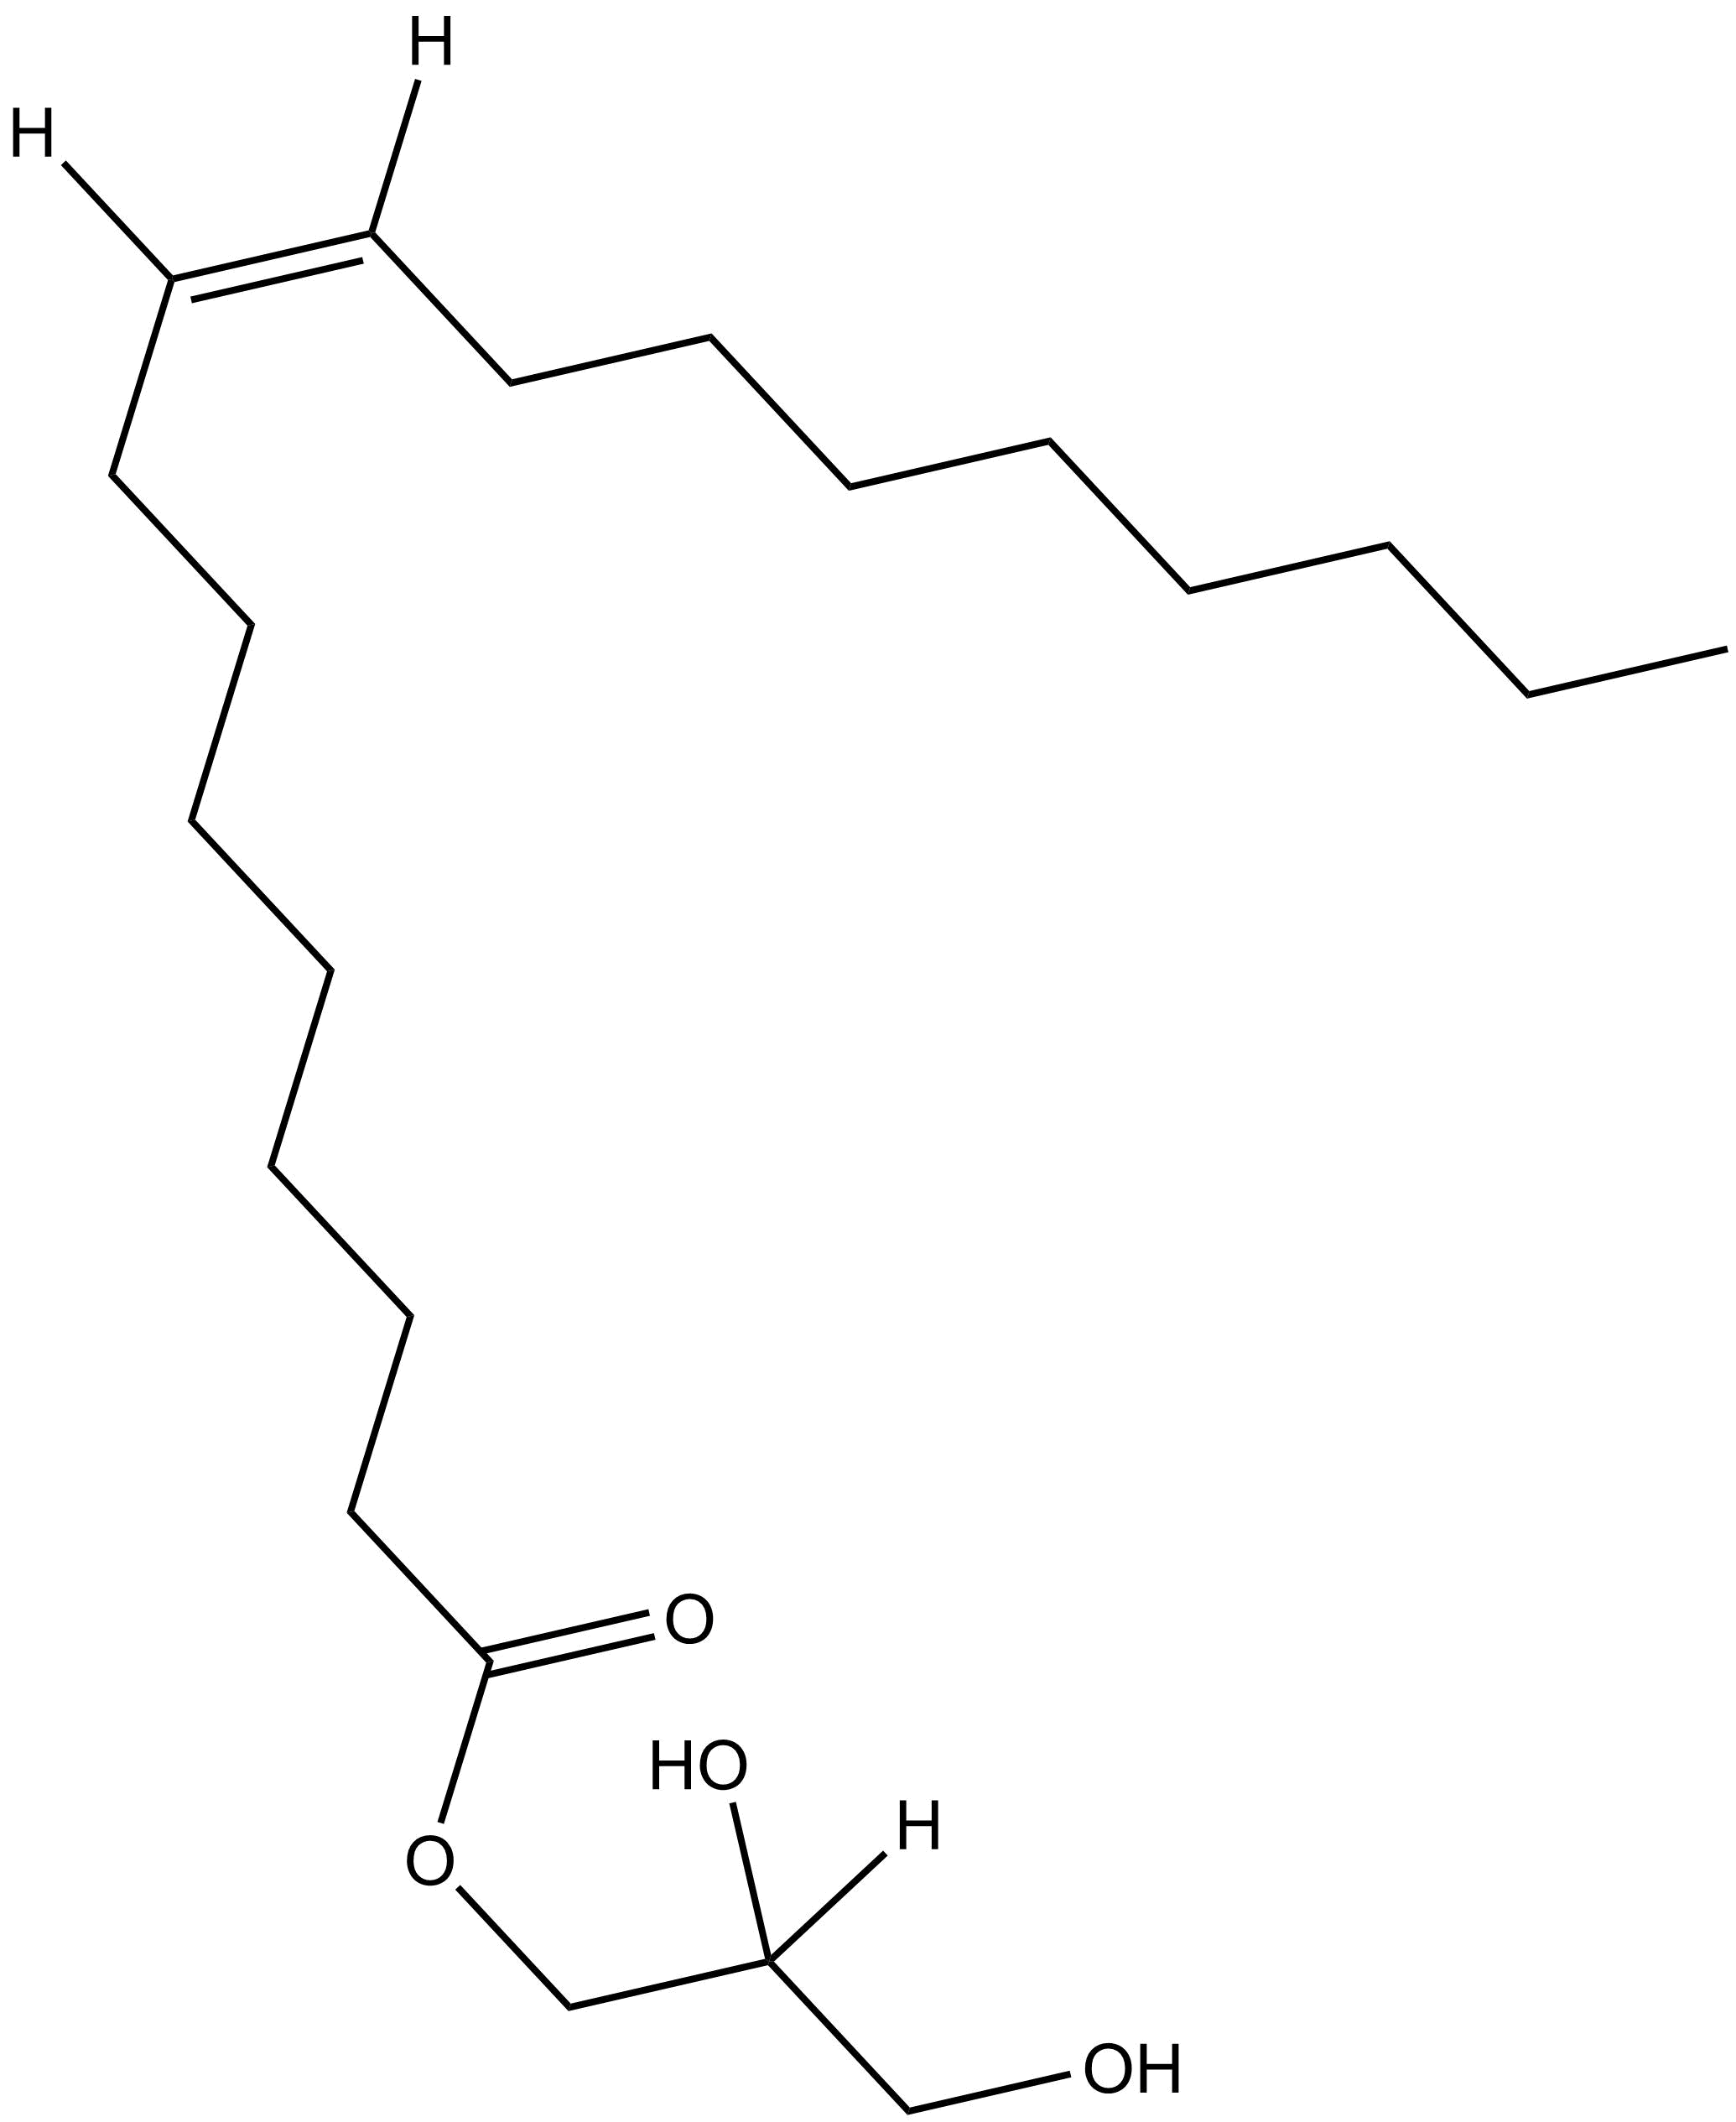 1-Oleoyl-rac-Glycerol (Monoolein), 1 g